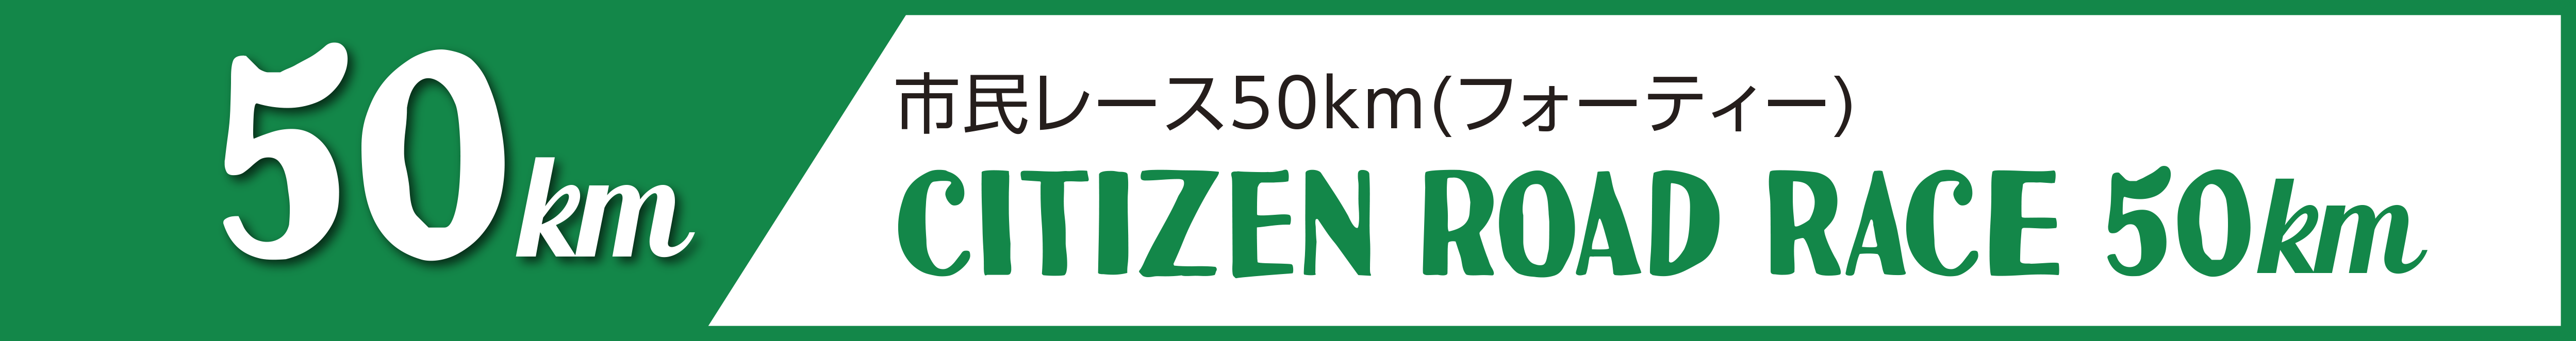 市民レース50km(フォーティー)